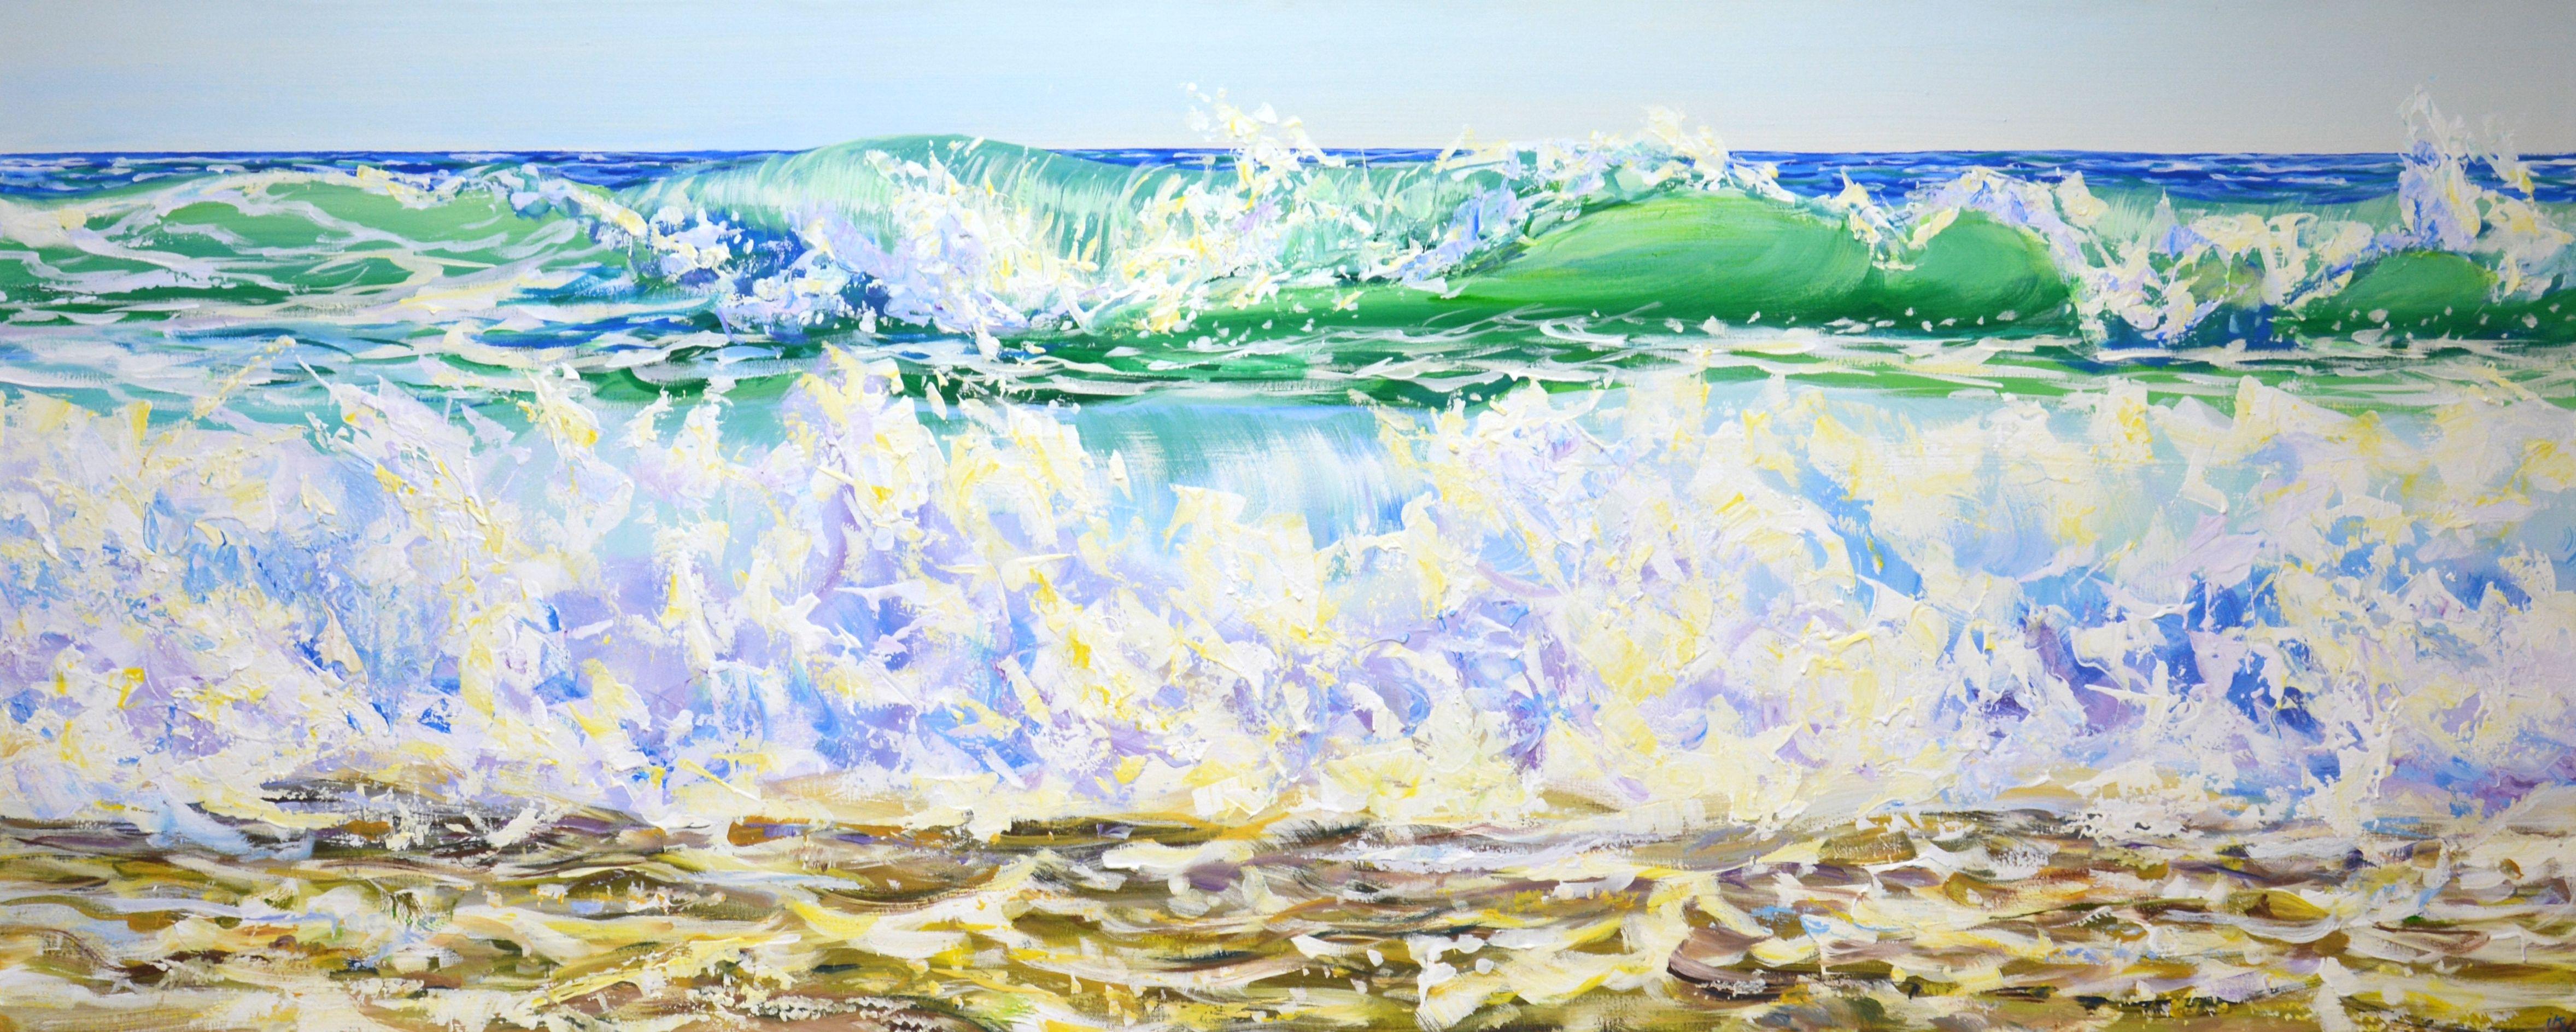 Vagues de l'océan 3, peinture, acrylique sur toile - Painting de Iryna Kastsova